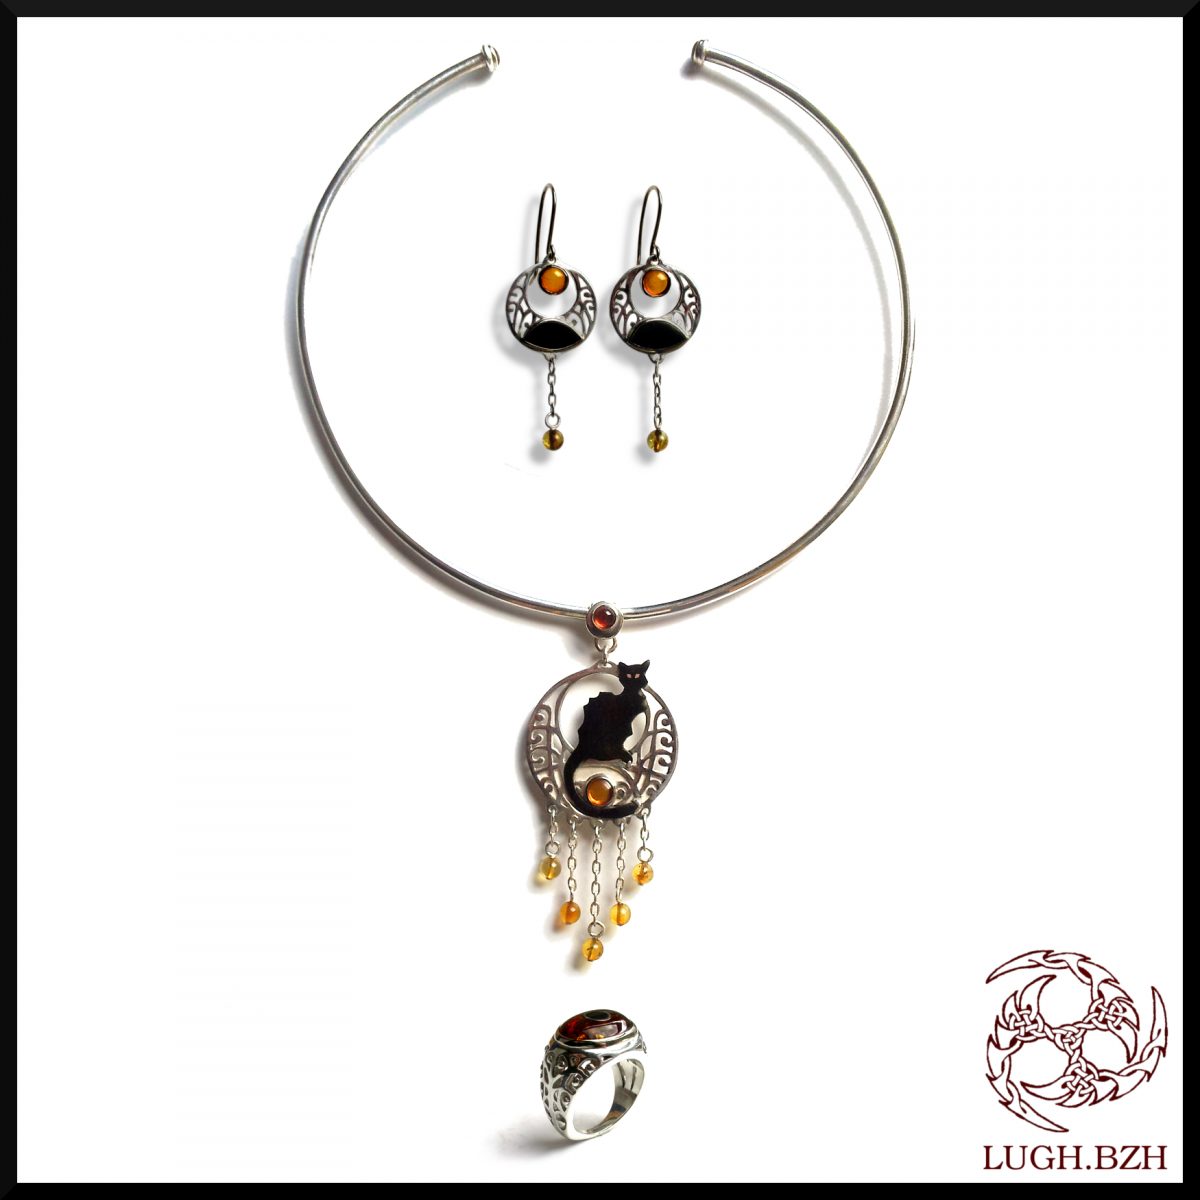 Kazh Du - Parure (collier, bague et boucles d'oreille) en or, argent, ambre et ébène - Gold, silver, amber and ebony jewellery set (Necklace, ring and earrings)